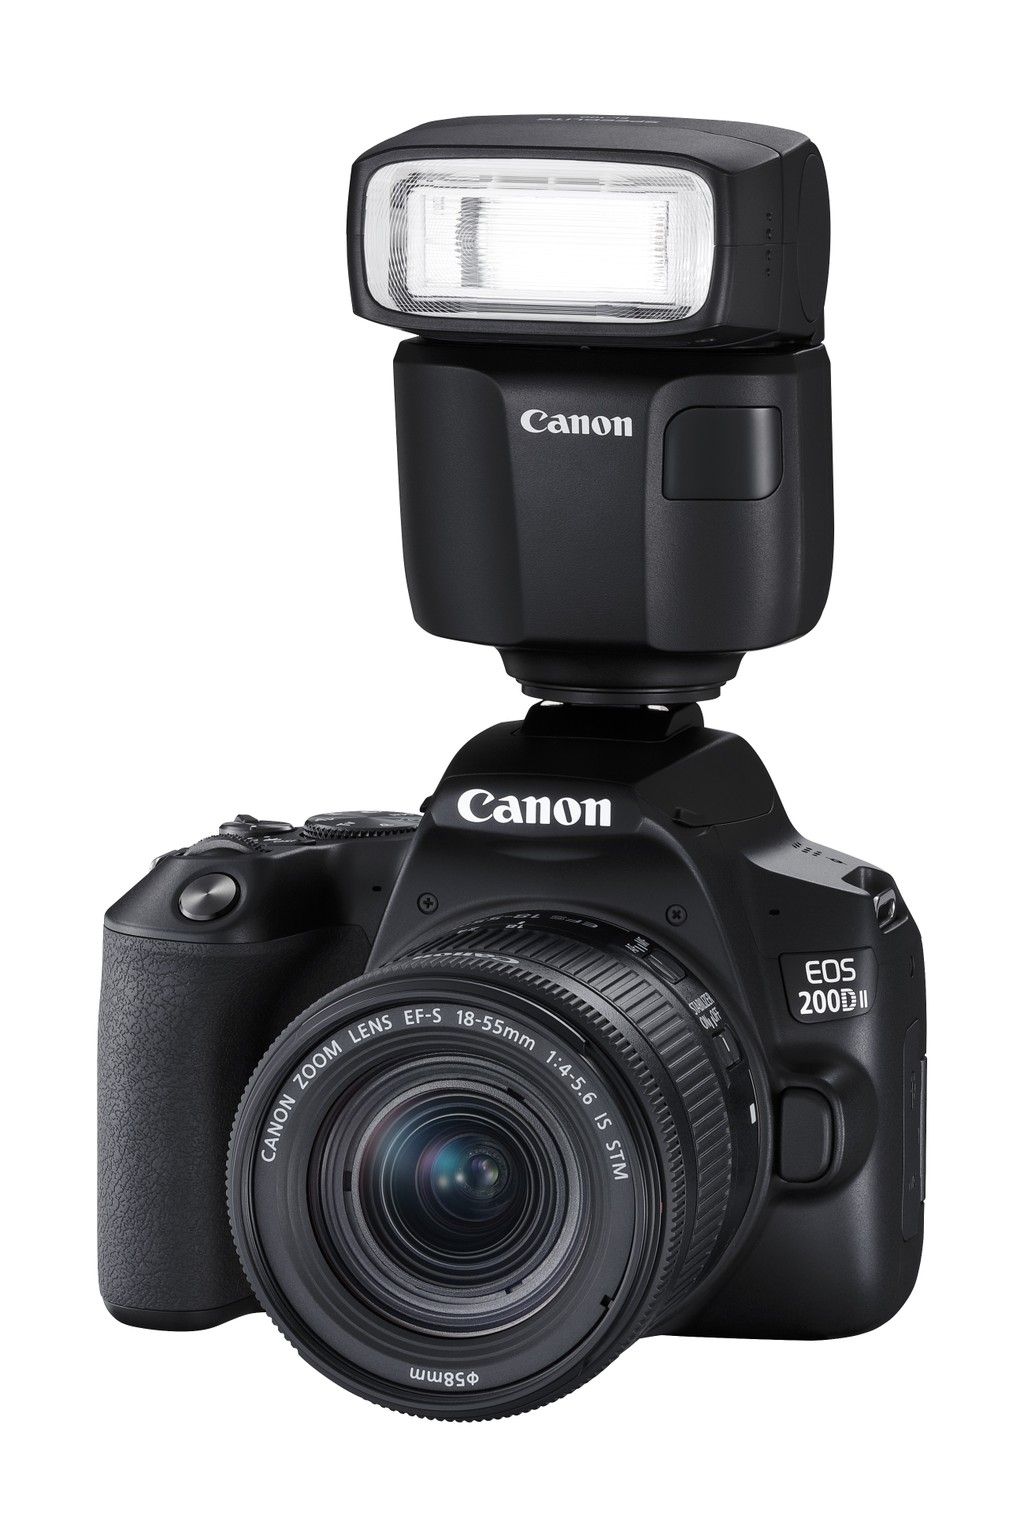 Canon ra mắt mẫu máy ảnh mới EOS 200D II với mức giá 16,5 triệu đồng ảnh 2